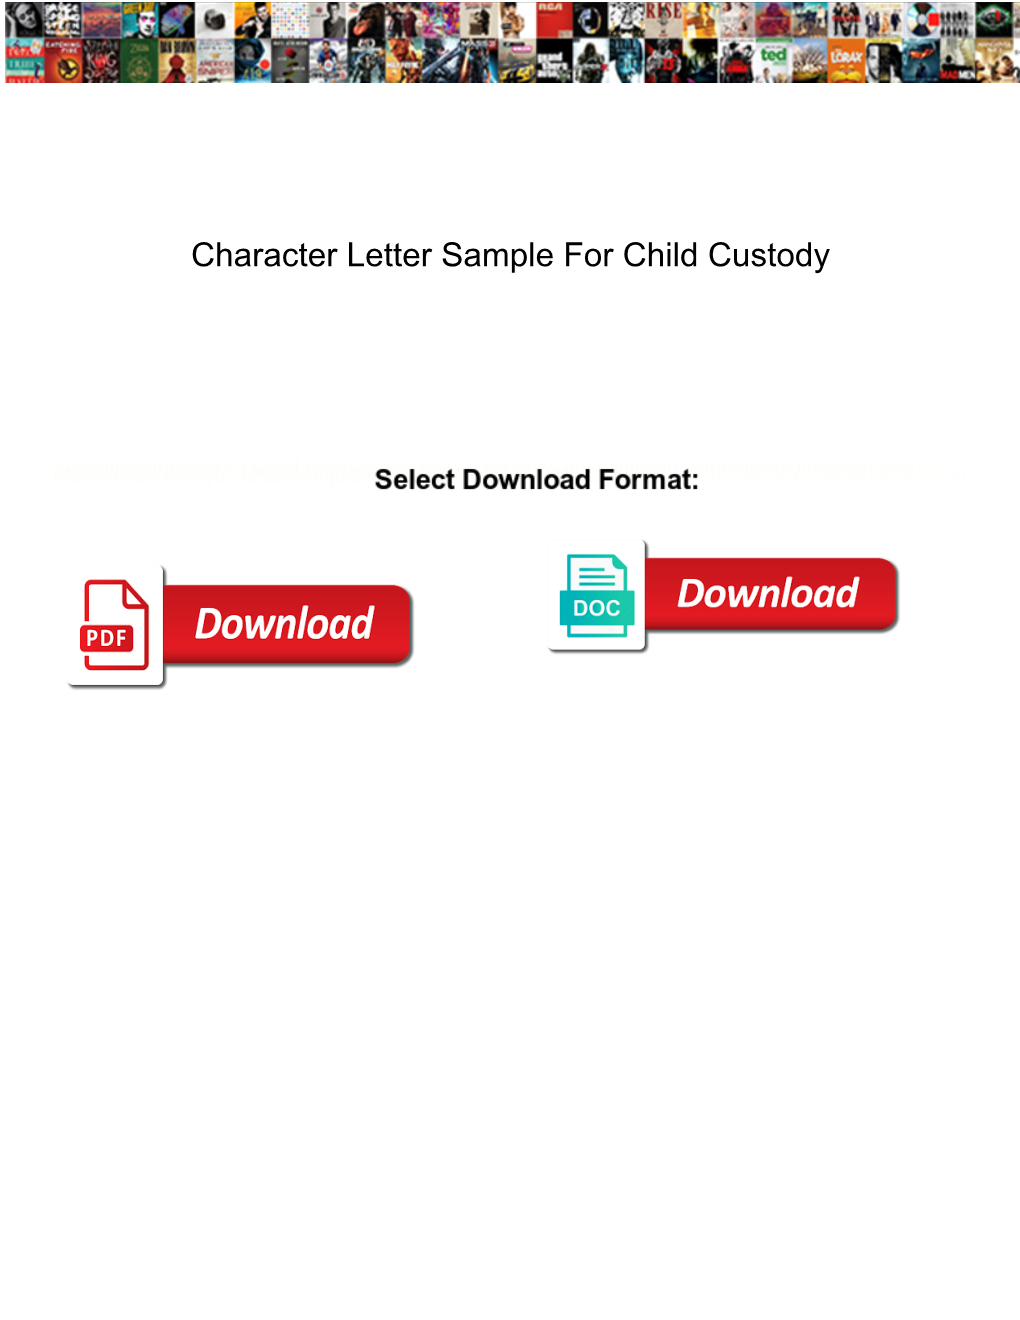 Character Letter Sample for Child Custody